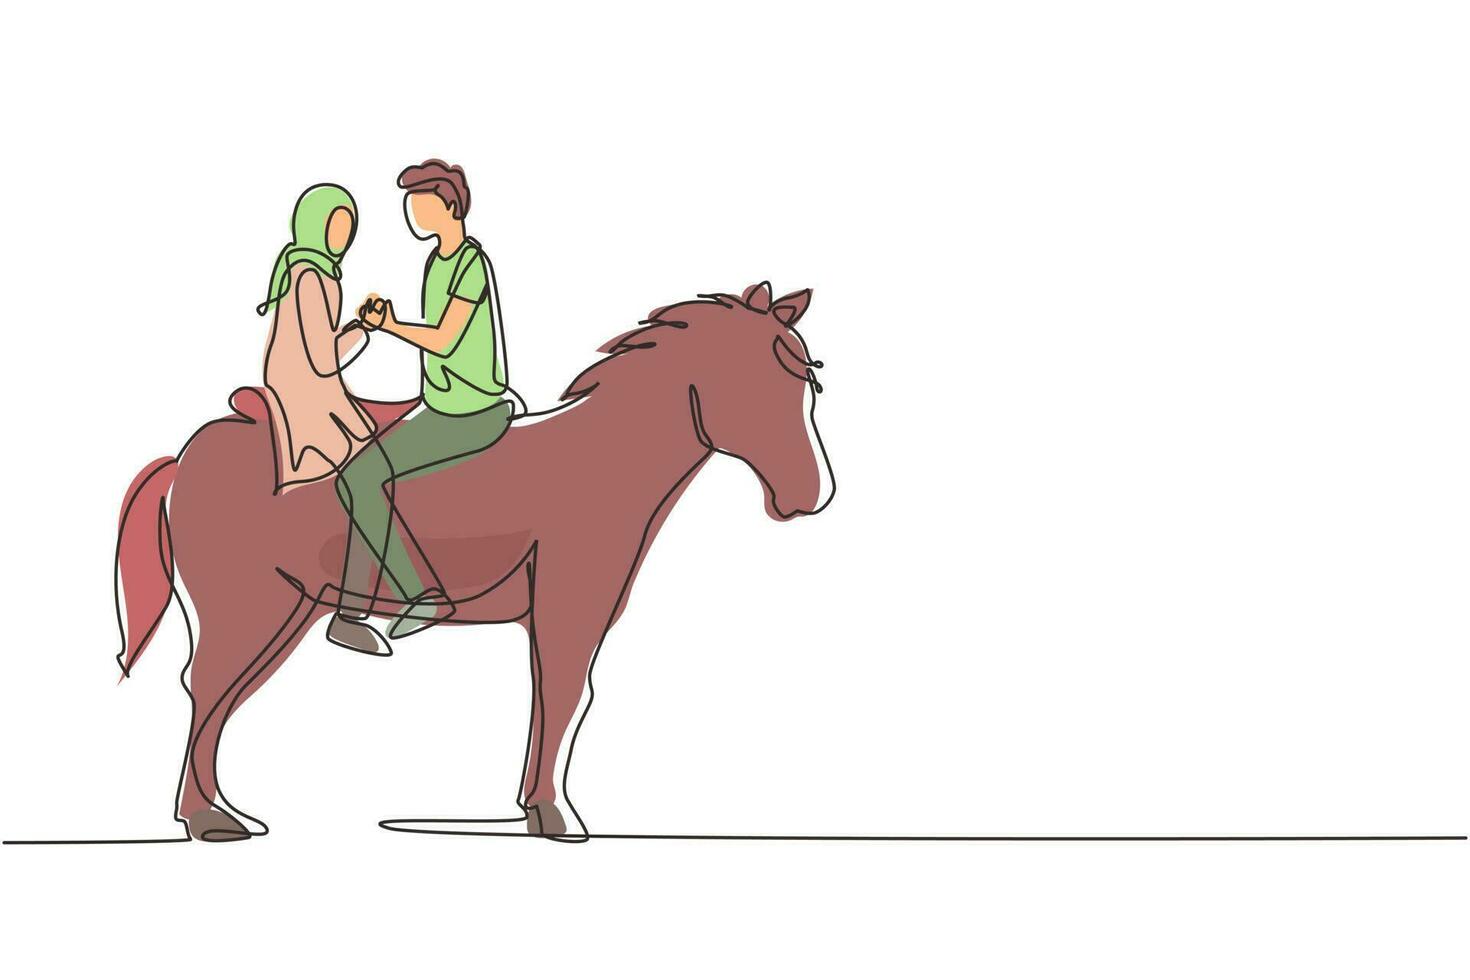 único desenho de linha contínua casal árabe montando cavalos cara a cara ao pôr do sol. homem feliz fazendo proposta de casamento para mulher. noivado e relacionamento amoroso. vetor de design gráfico de desenho dinâmico de uma linha